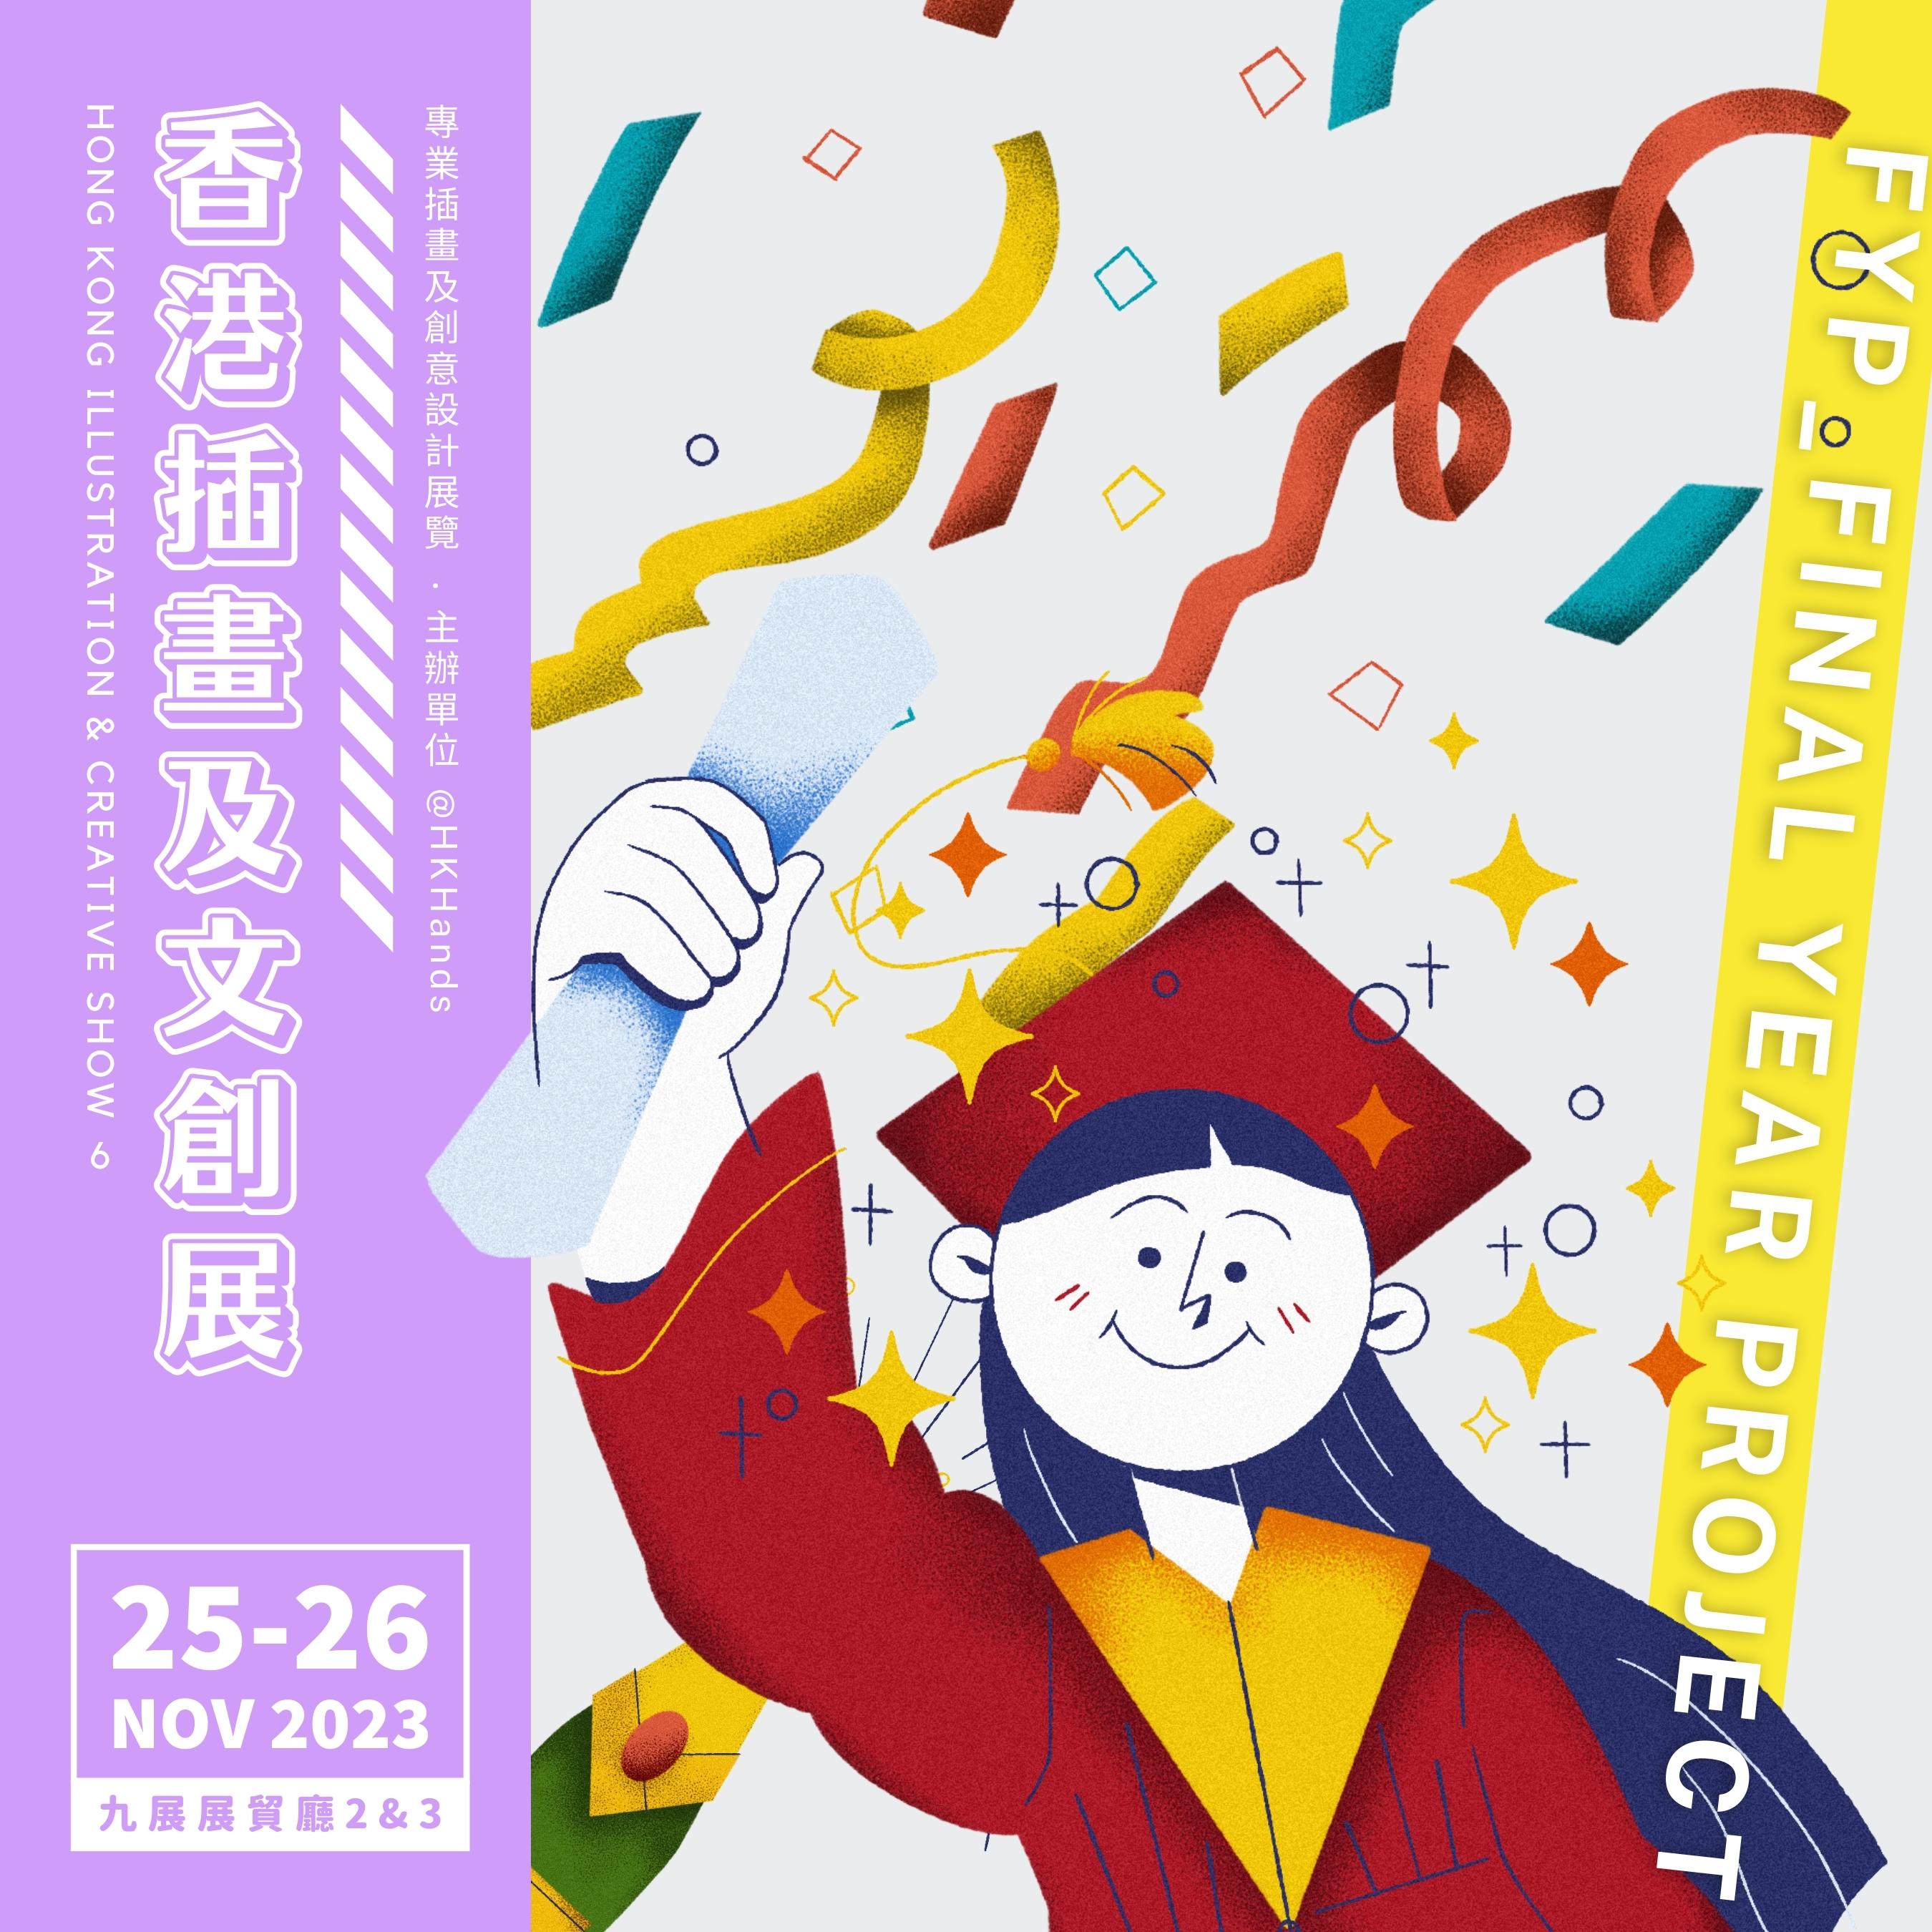 香港插畫及文創展6 (城區活動2023之衛星活動)